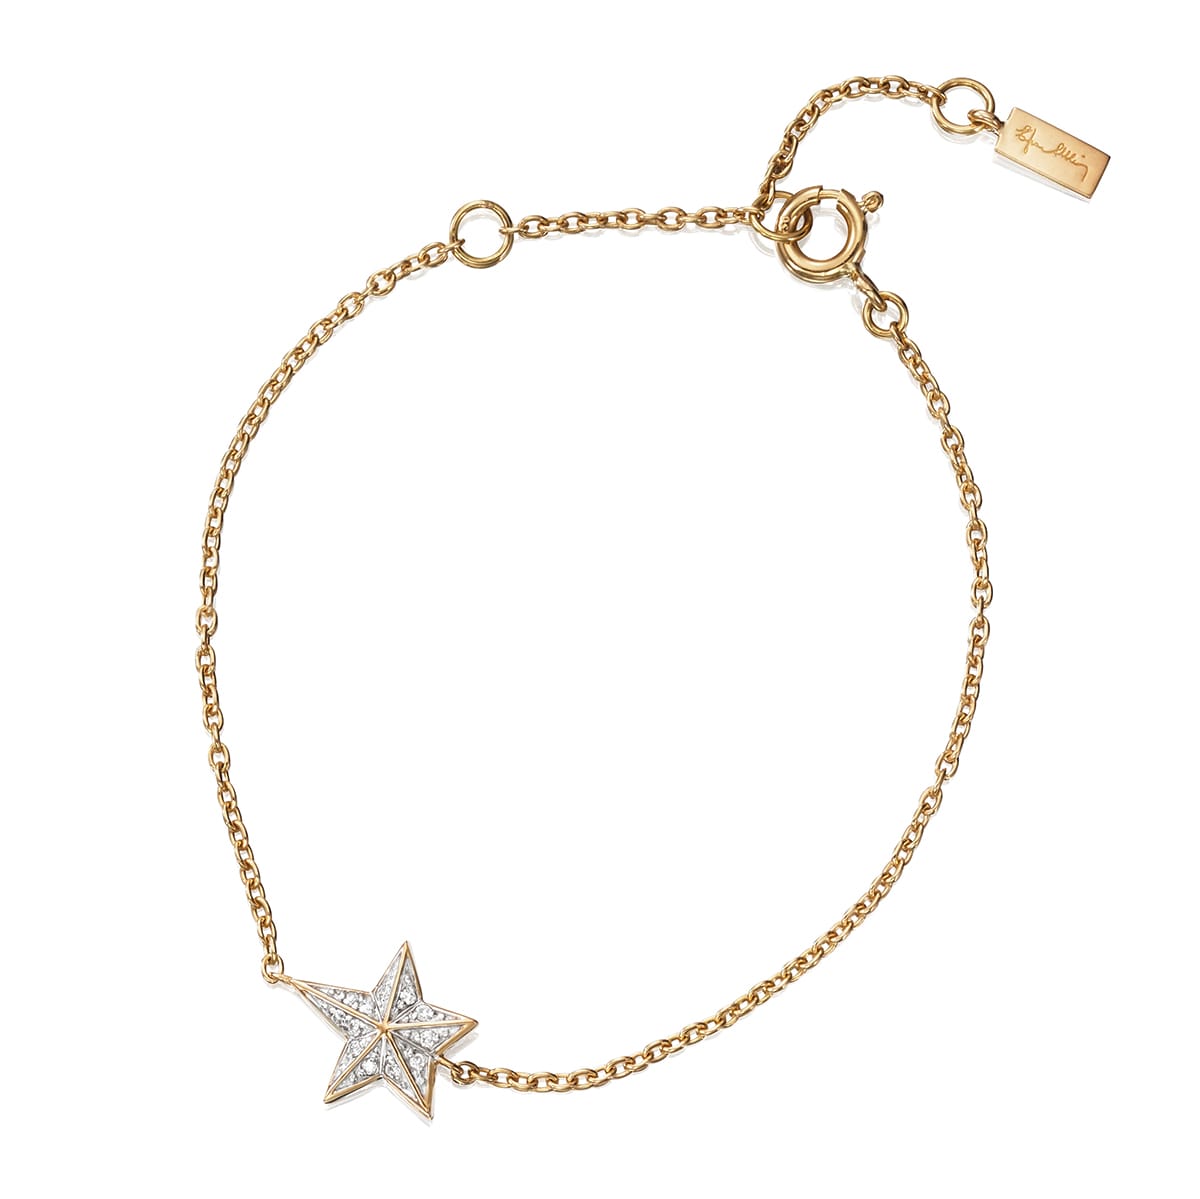 Efva_Attling_smycken_Catch A Falling Star Stars Bracelet 14-101-01405(2)_hos_Jarl_Sandin